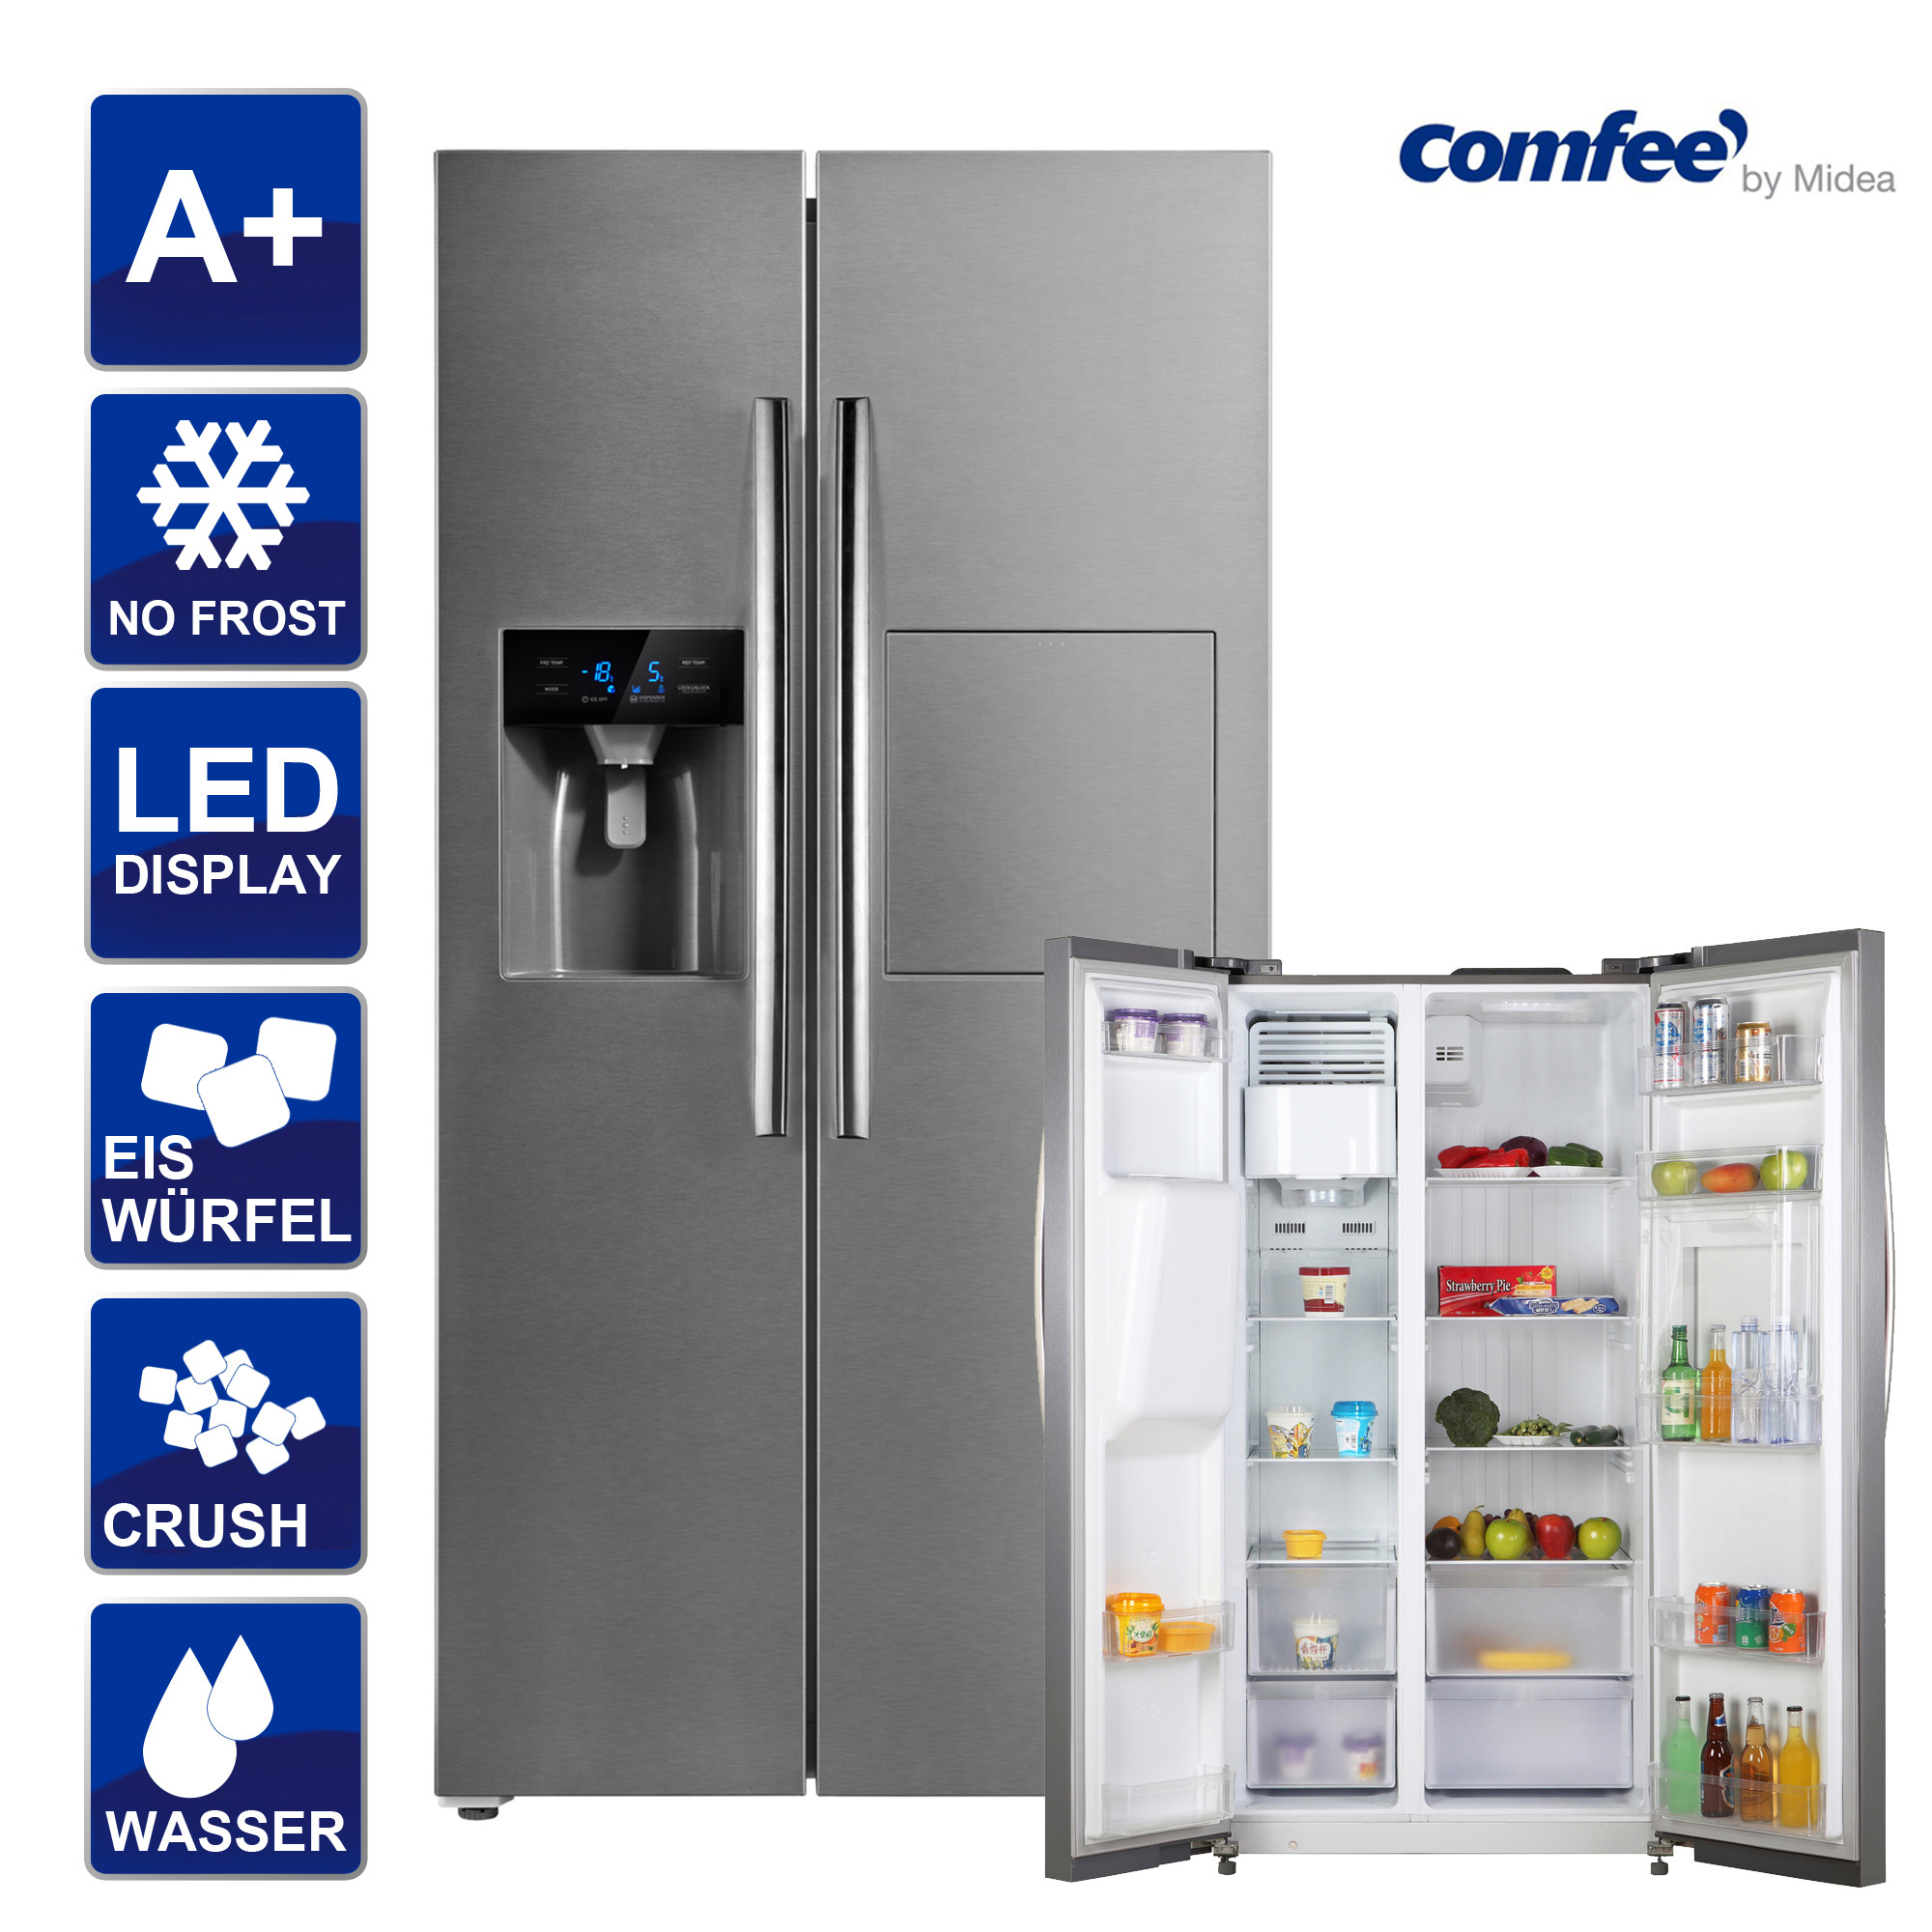 Tischkühlschrank Abtauautomatik 47 cm Breite weiß 41 dB 93 L Comfee  RCD132WH1 | eBay